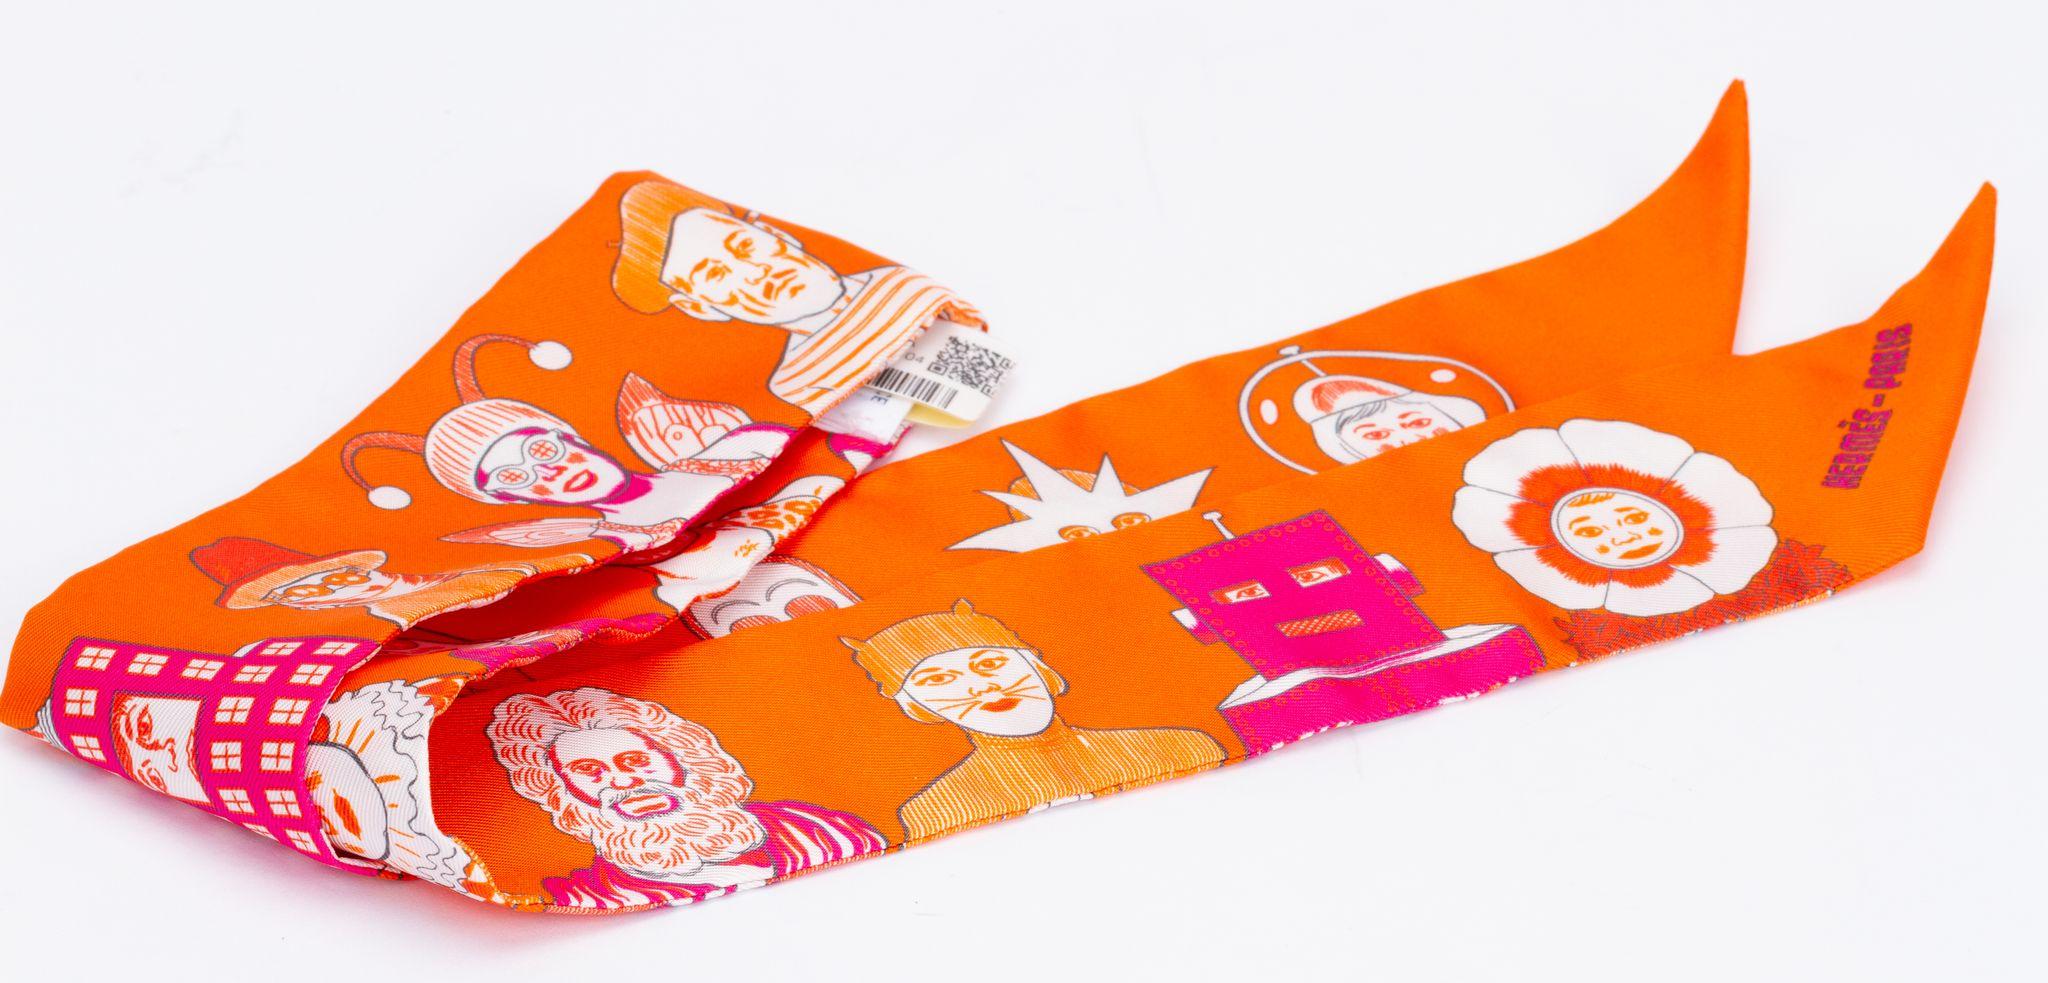 Nouvelle édition Hermès Dresscode twilly. L'écharpe est fabriquée en soie et se présente dans un orange vibrant. L'impression montre différents personnages, par exemple la statue de la liberté. La pièce est livrée dans sa boîte et sa pochette